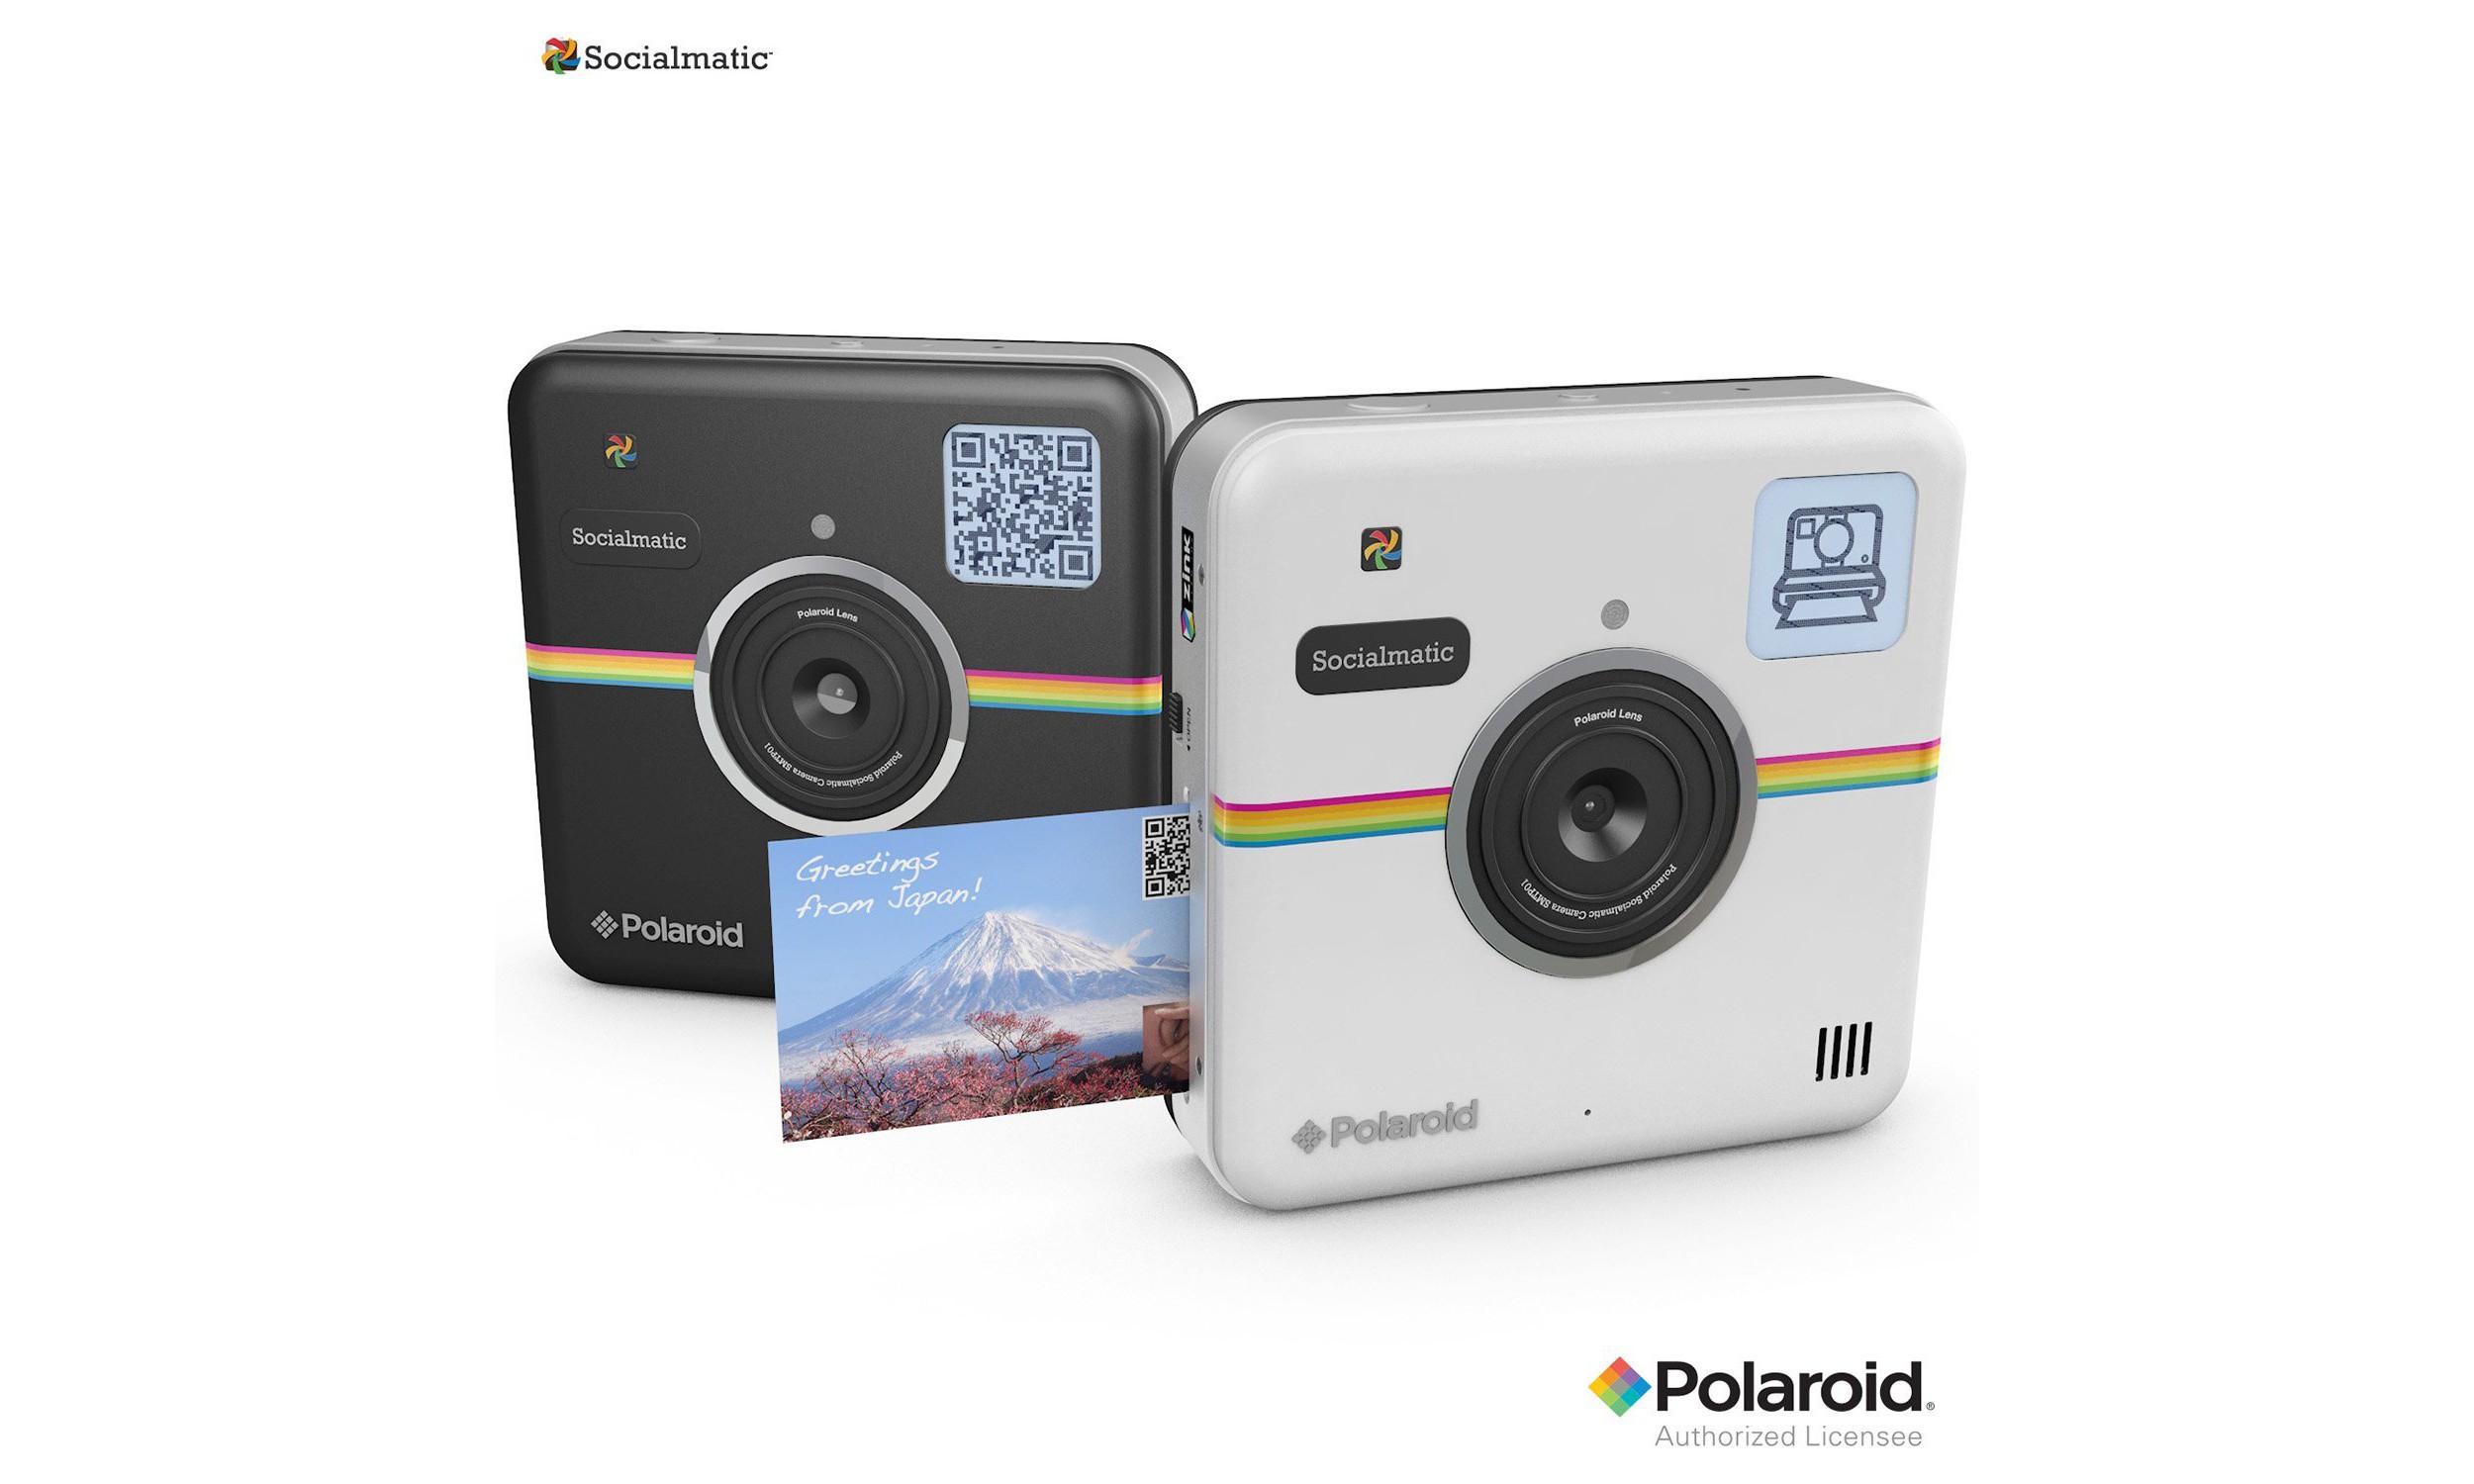 概念神器倒计时，Polaroid Socialmatic 数码相机开启预订